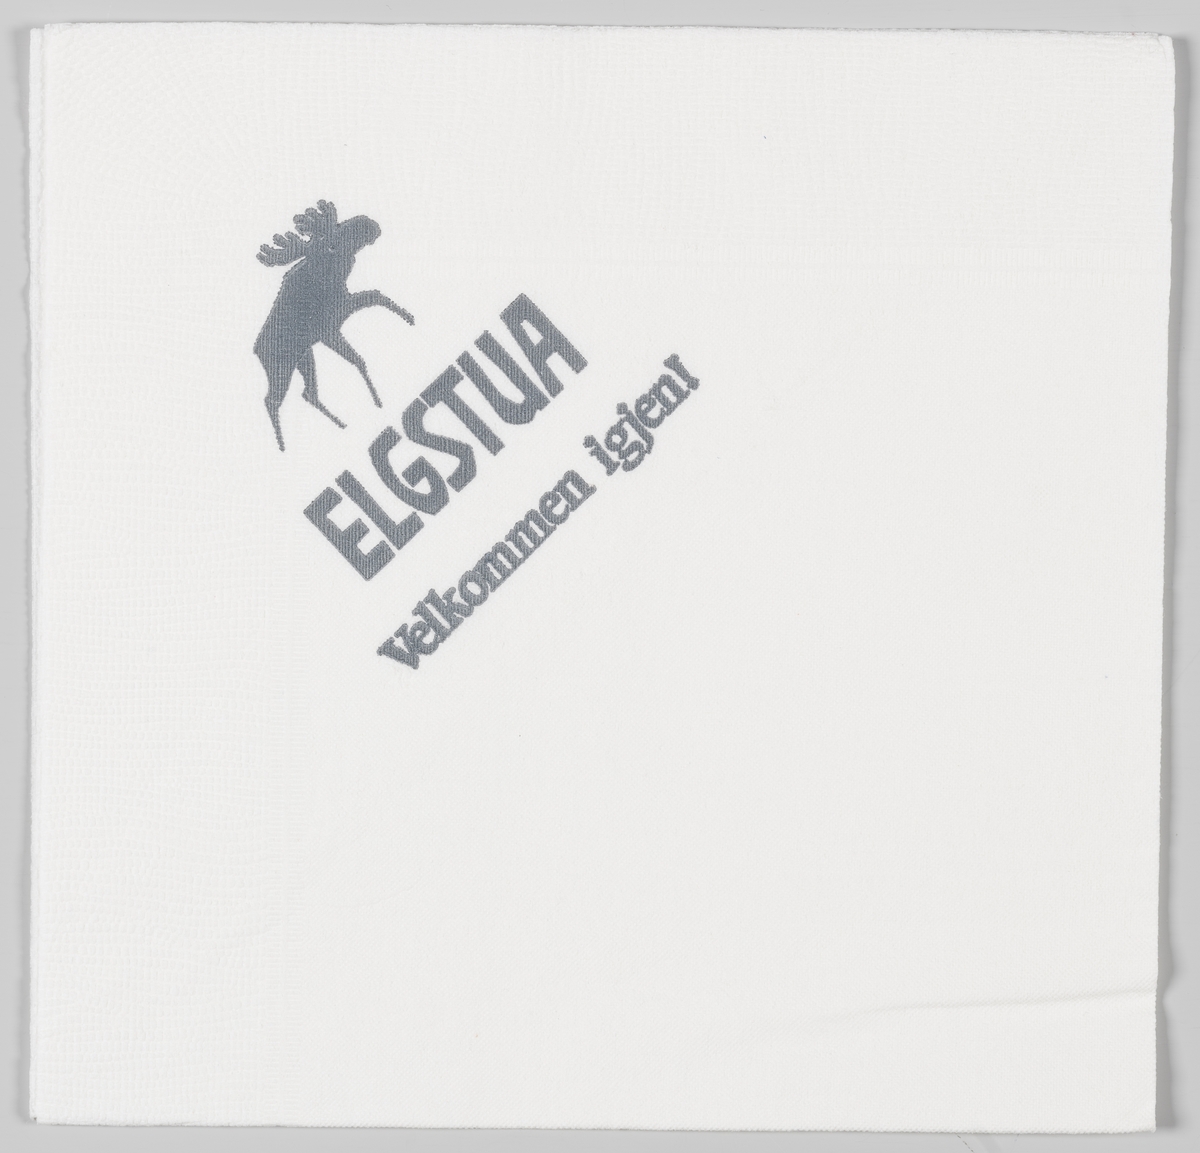 En elg og en reklametekst for Elgstua kafe og hotell på Elverum.

Elgstua Kafé ble etablert som kafé og overnattingsted i 1959. Elgstua hadde 18 koselige gjesterom, 13 av de er beholdt etter at Scandic Elgstua ble bygget vegg i vegg. Elgstua Kafé har beholdt sin tradisjonelle meny.

Samme reklame på MIA.00007-004-0311.